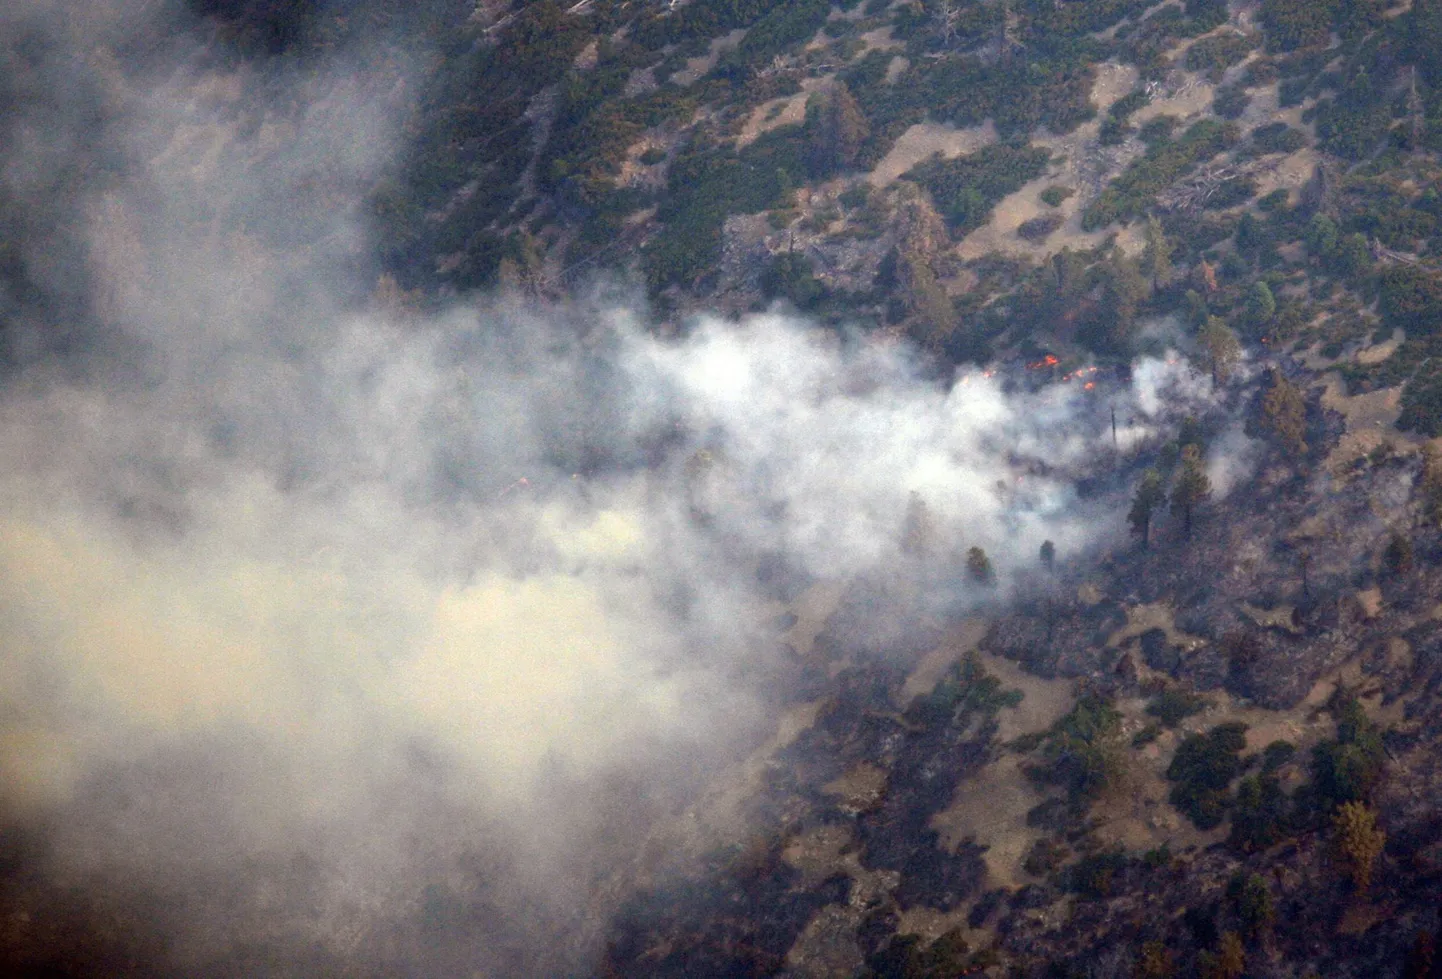 GPS koordinaatide järgi kukkus tuletõrjujaid vedanud helikopter alla just selles paigas Californias.